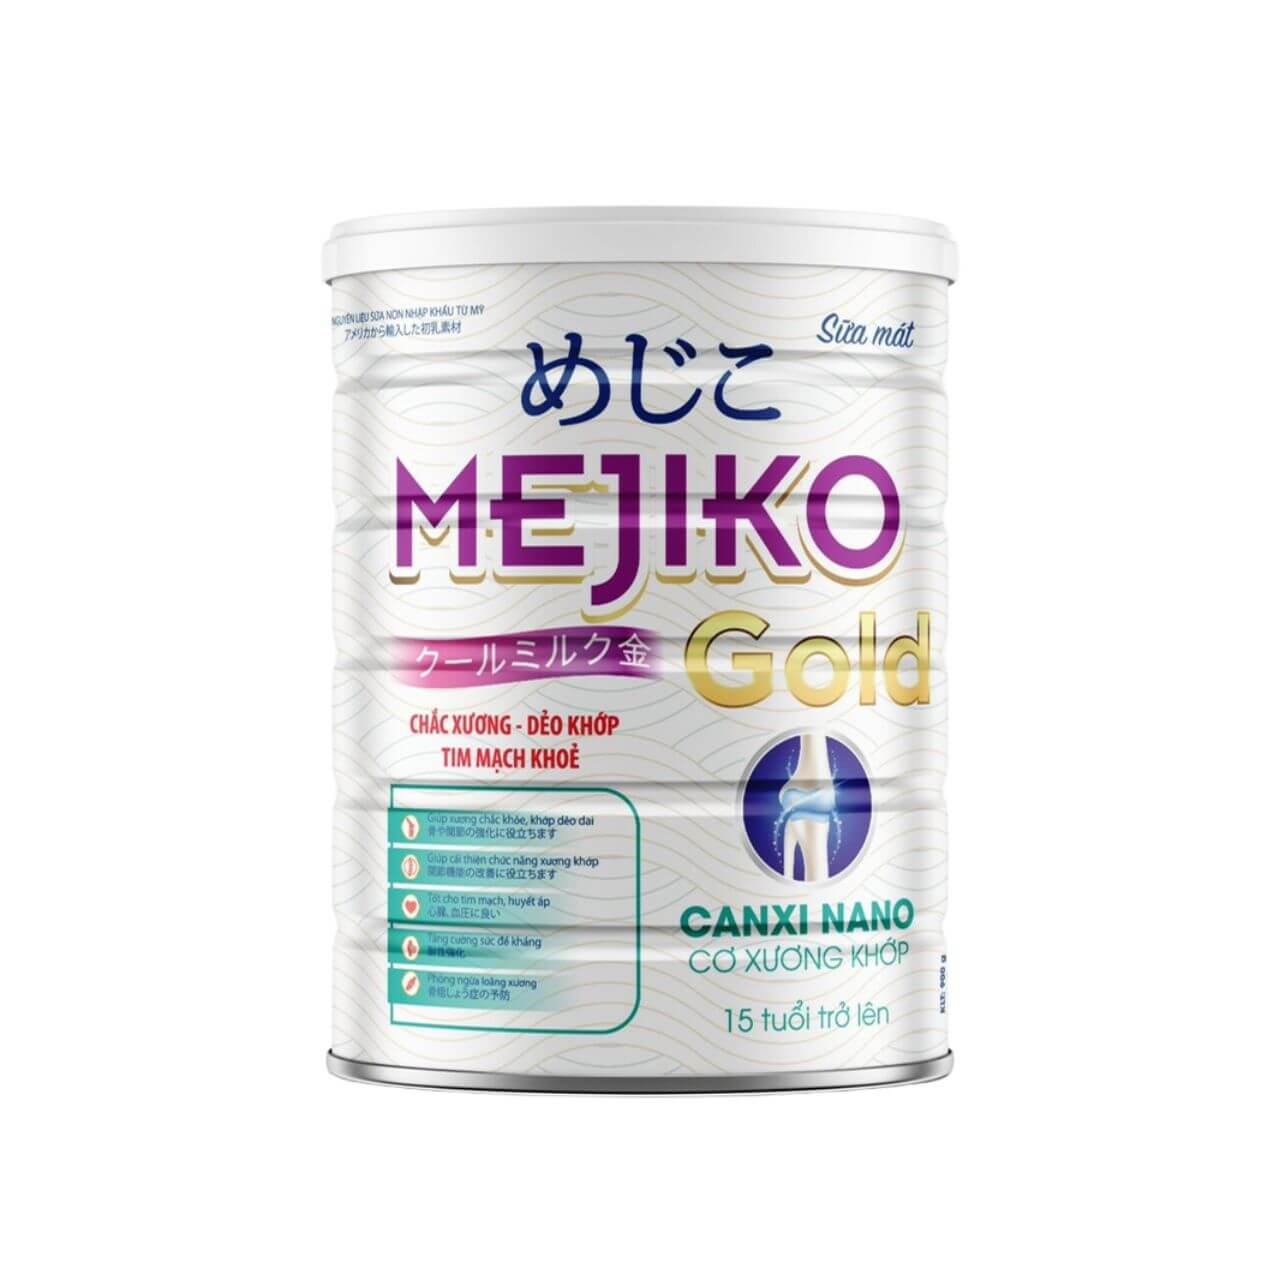 Sữa Mejiko Gold Canxi Nano